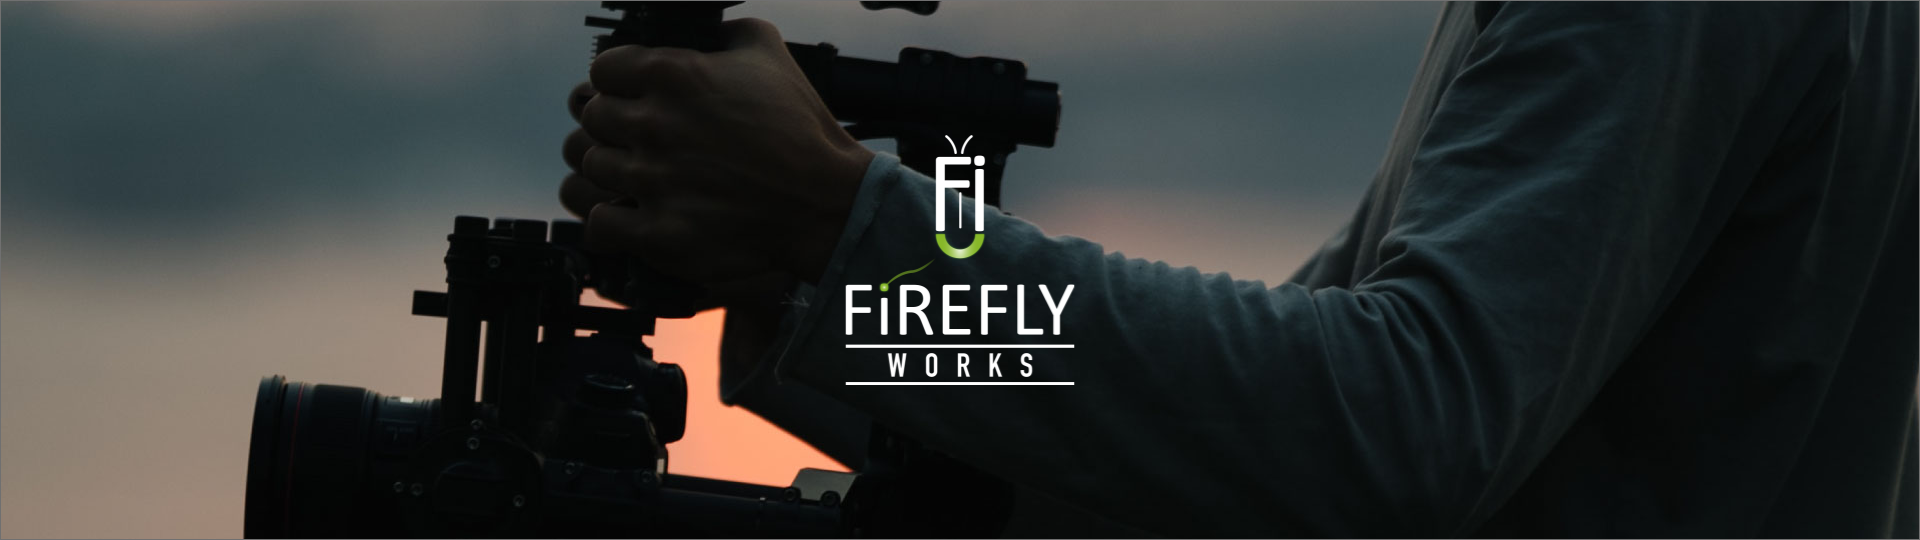 FiREFLY_WORKS